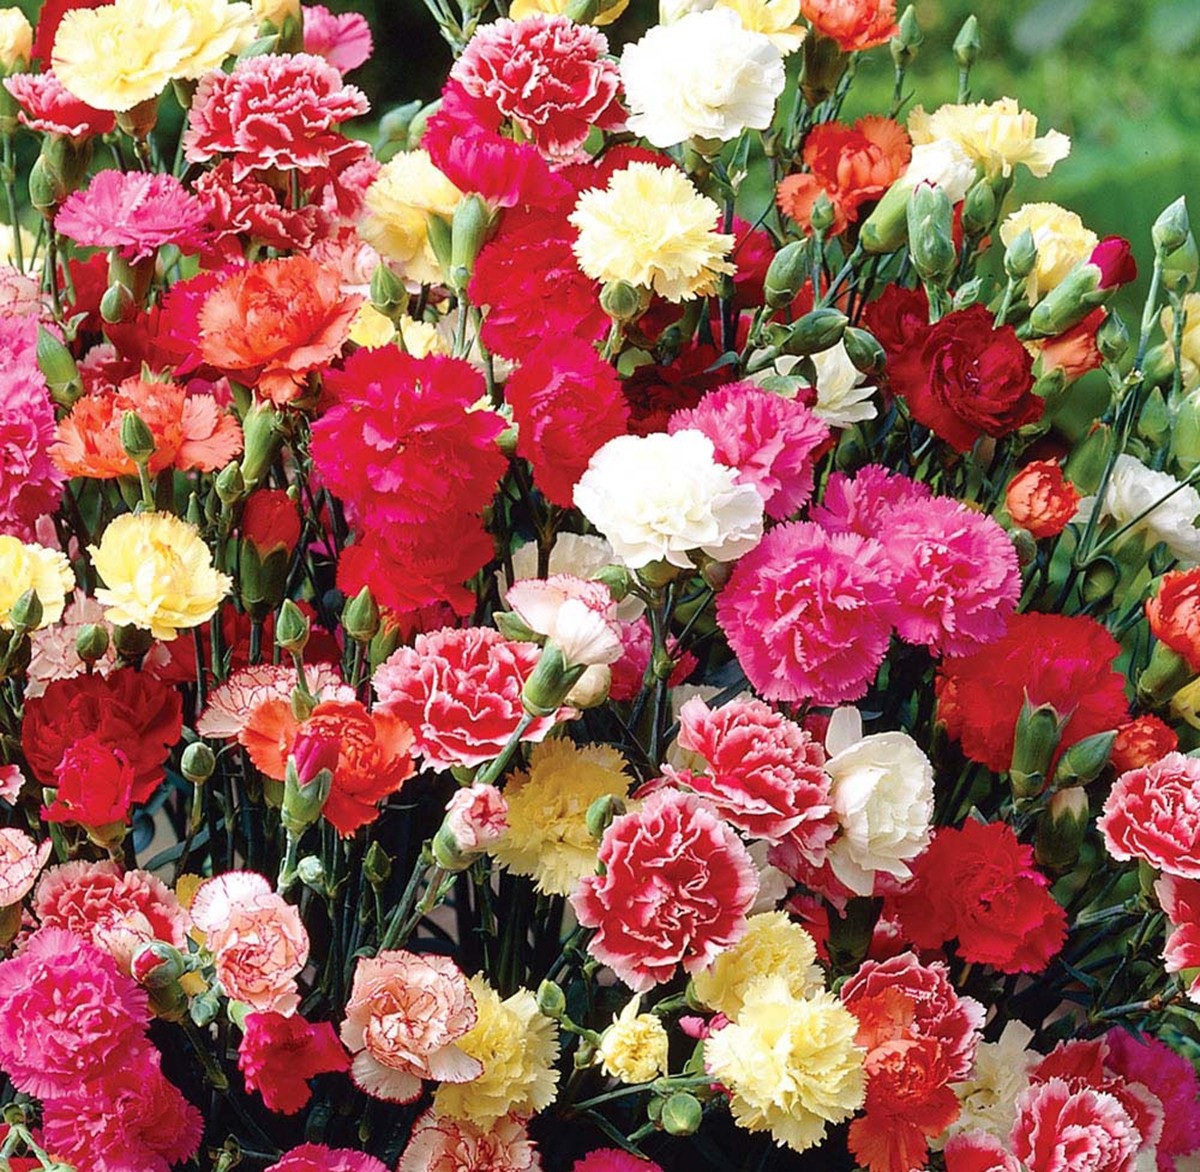 Hoa cẩm chướng mang vẻ đẹp bình dị nhẹ nhàng